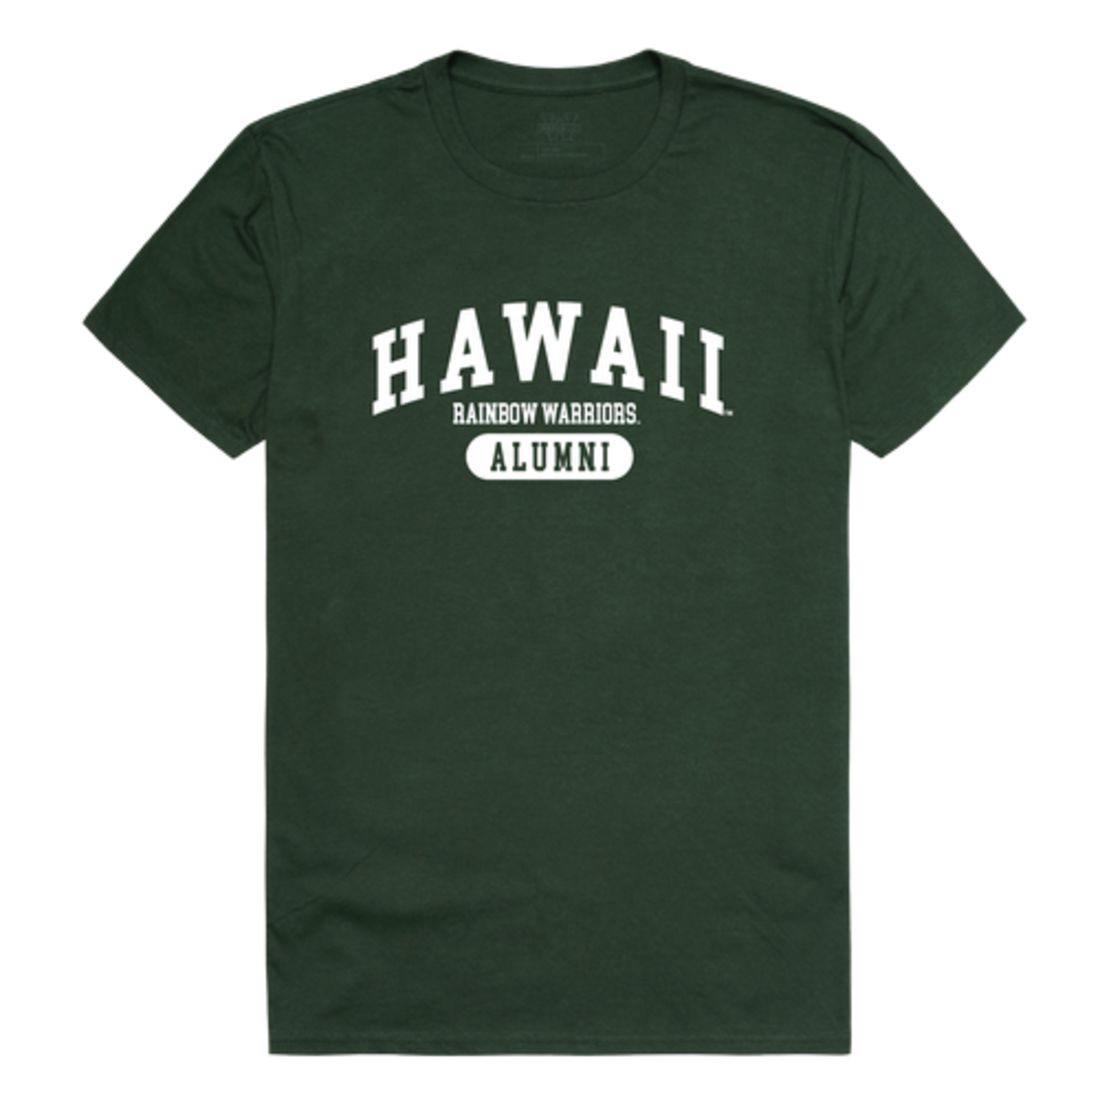 University of Hawaii Rainbow Warriors Alumni Tee T-Shirt-Campus-Wardrobe